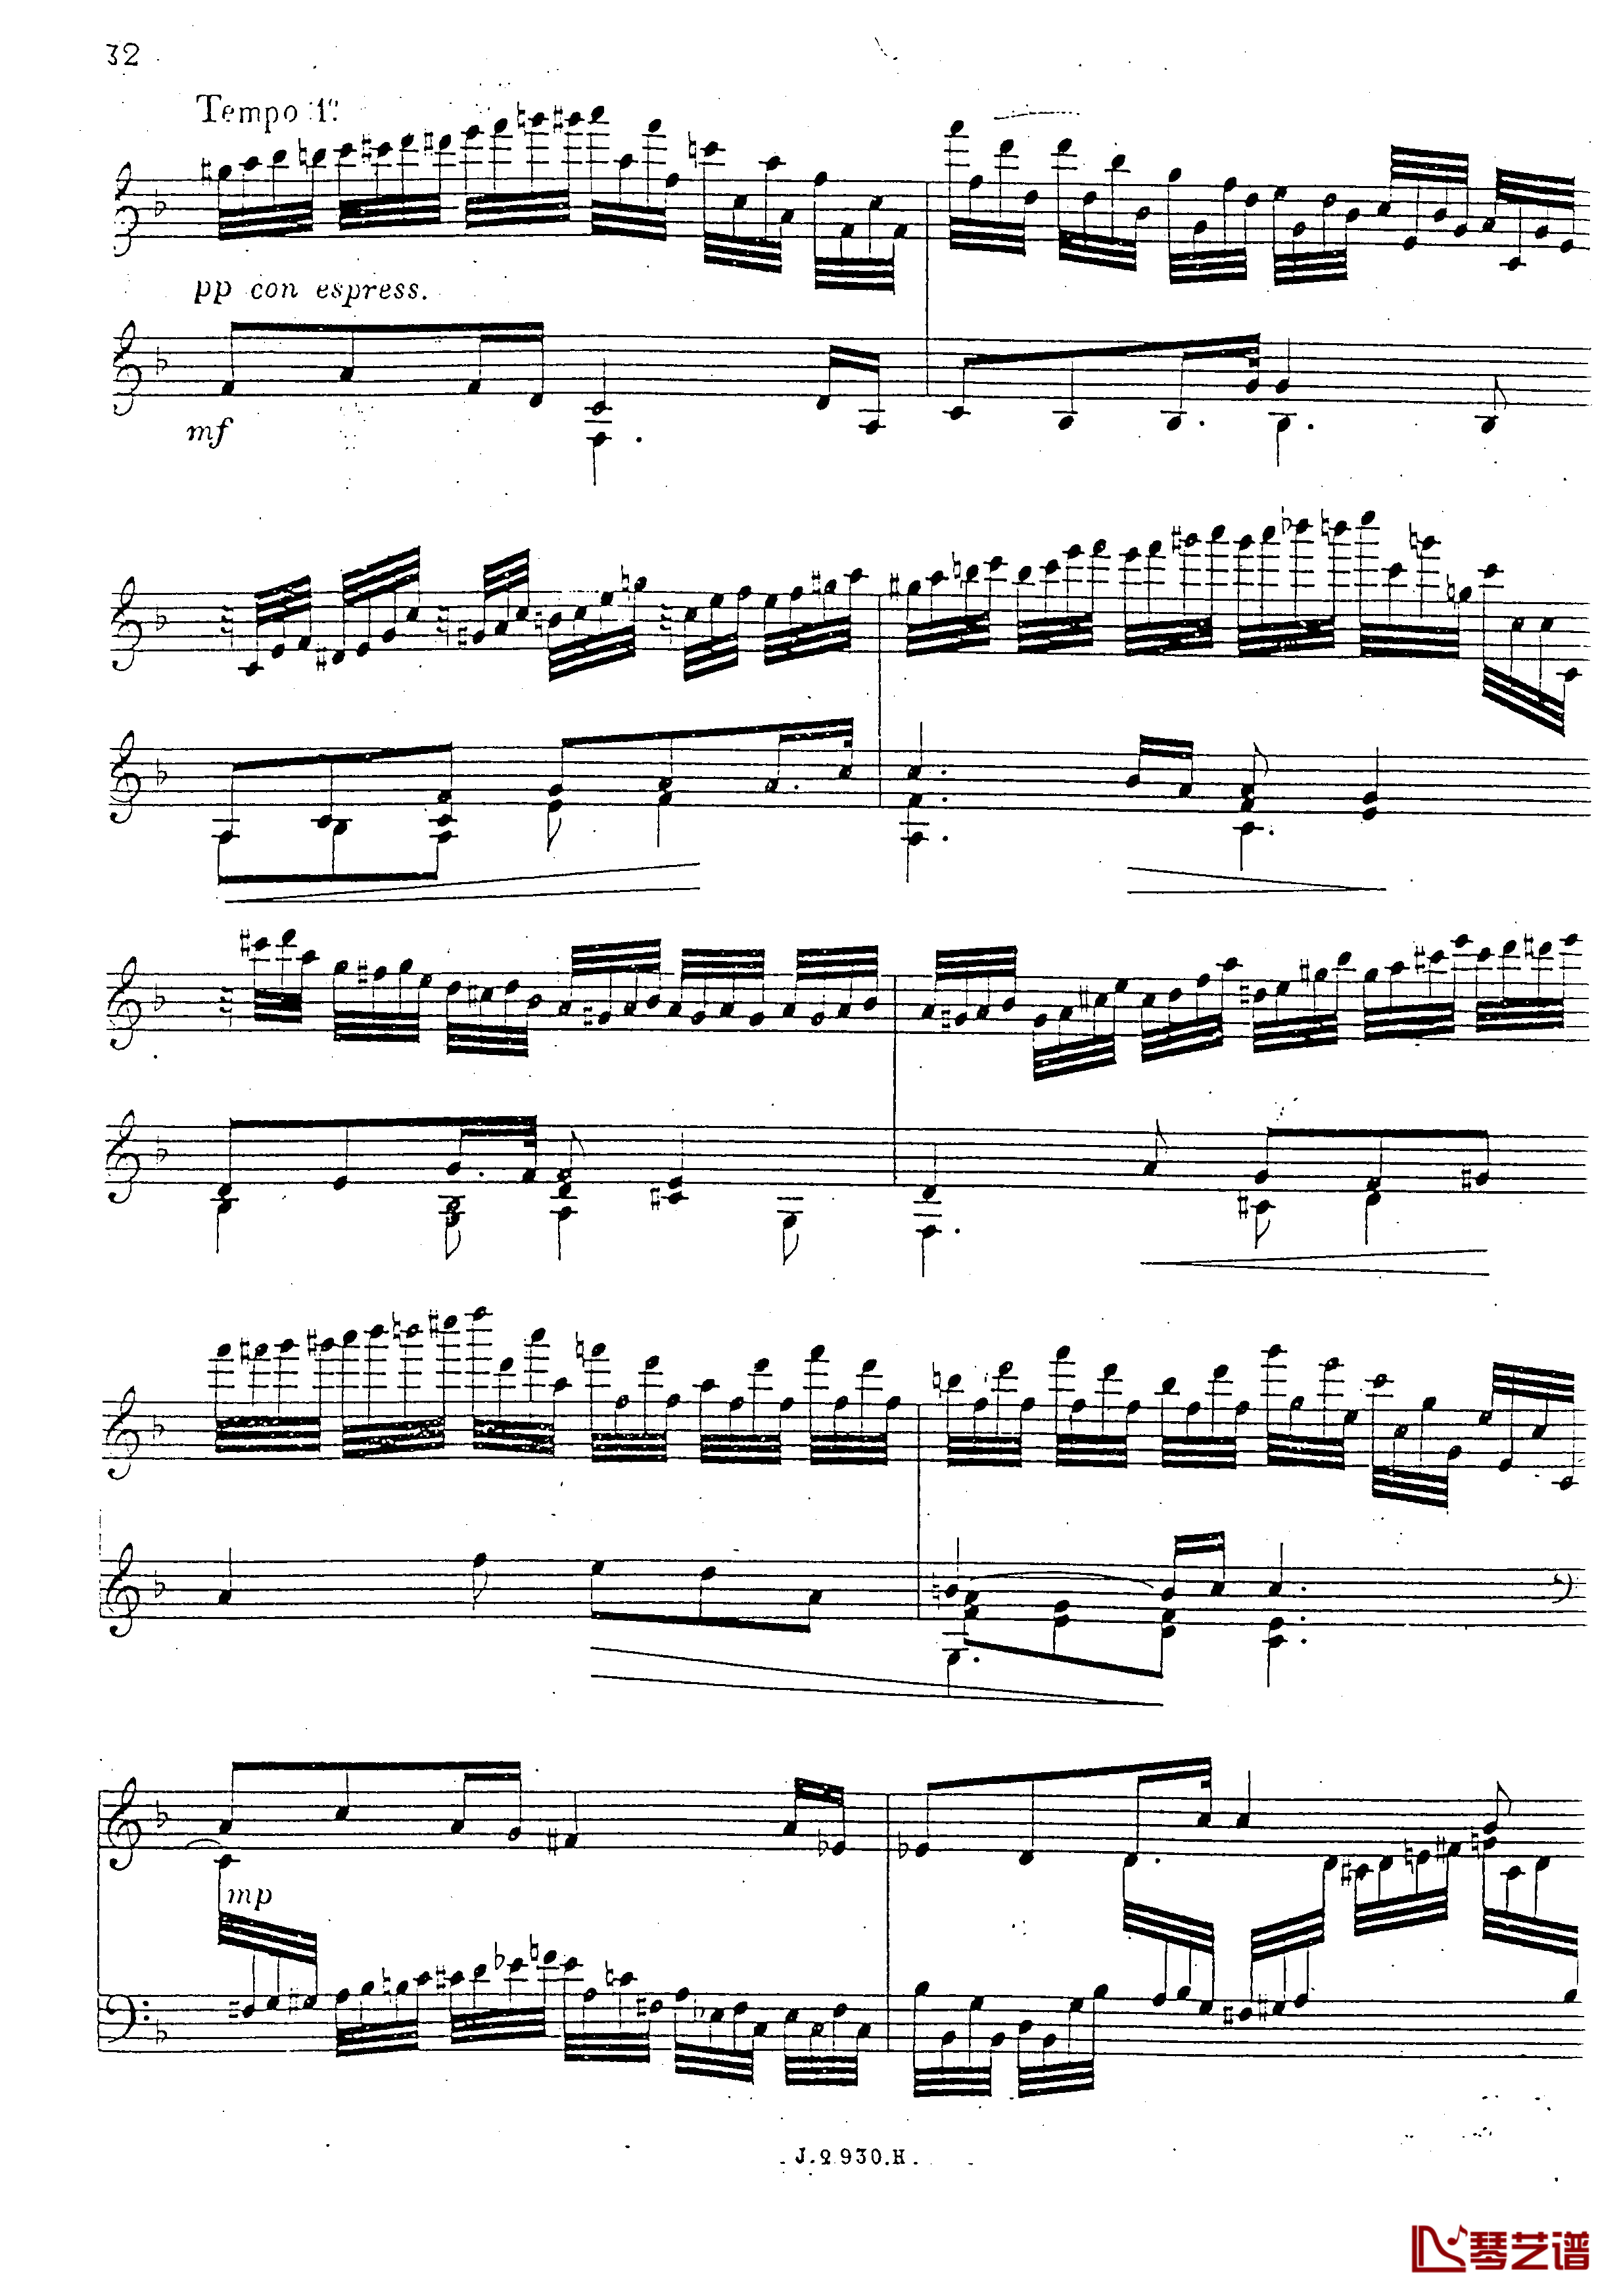 a小调第四钢琴奏鸣曲钢琴谱-安东 鲁宾斯坦- Op.10033